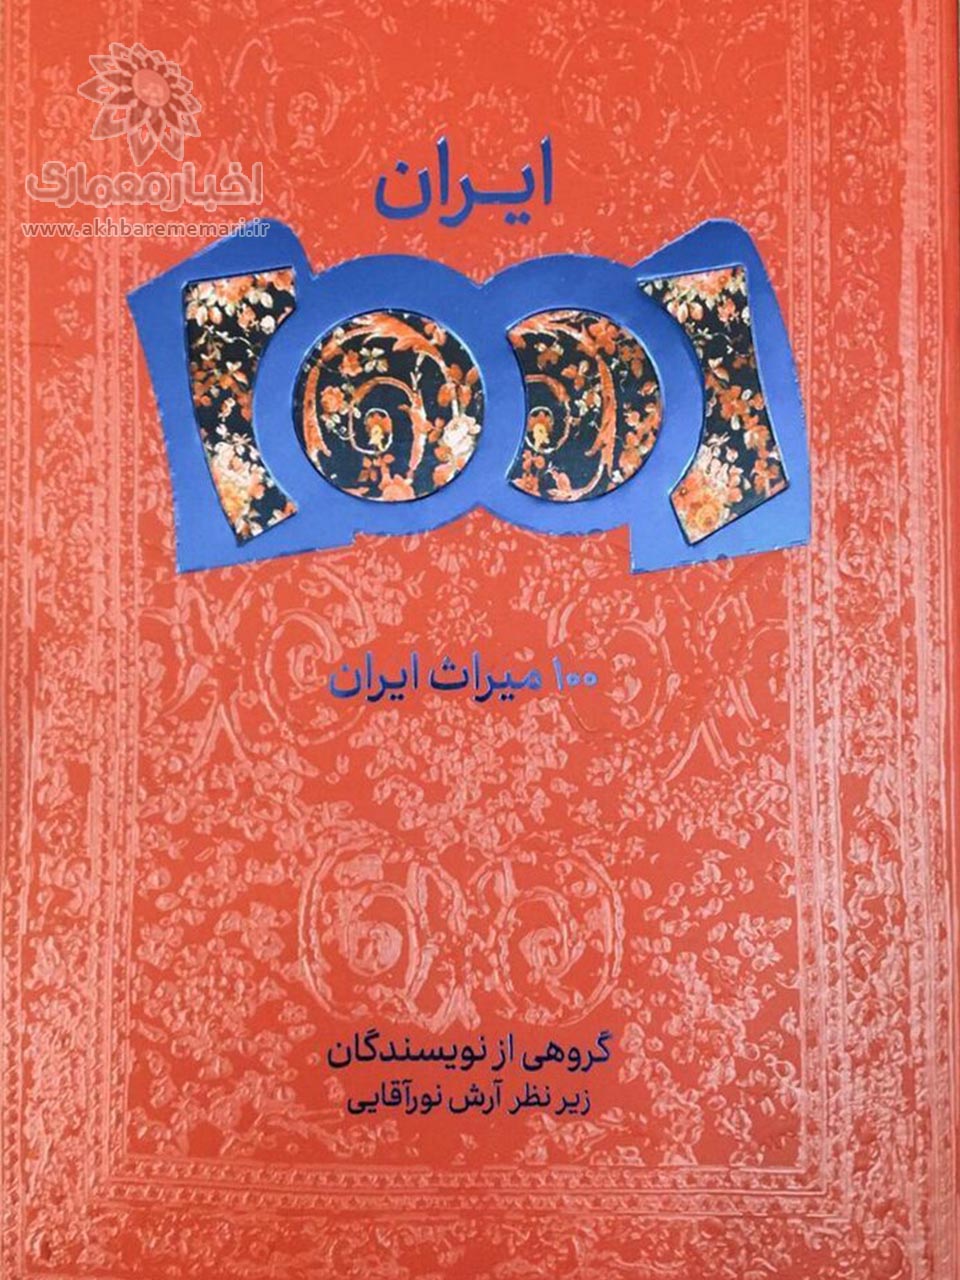 کتاب «۱۰۰ میراث ایران» منتشر شد